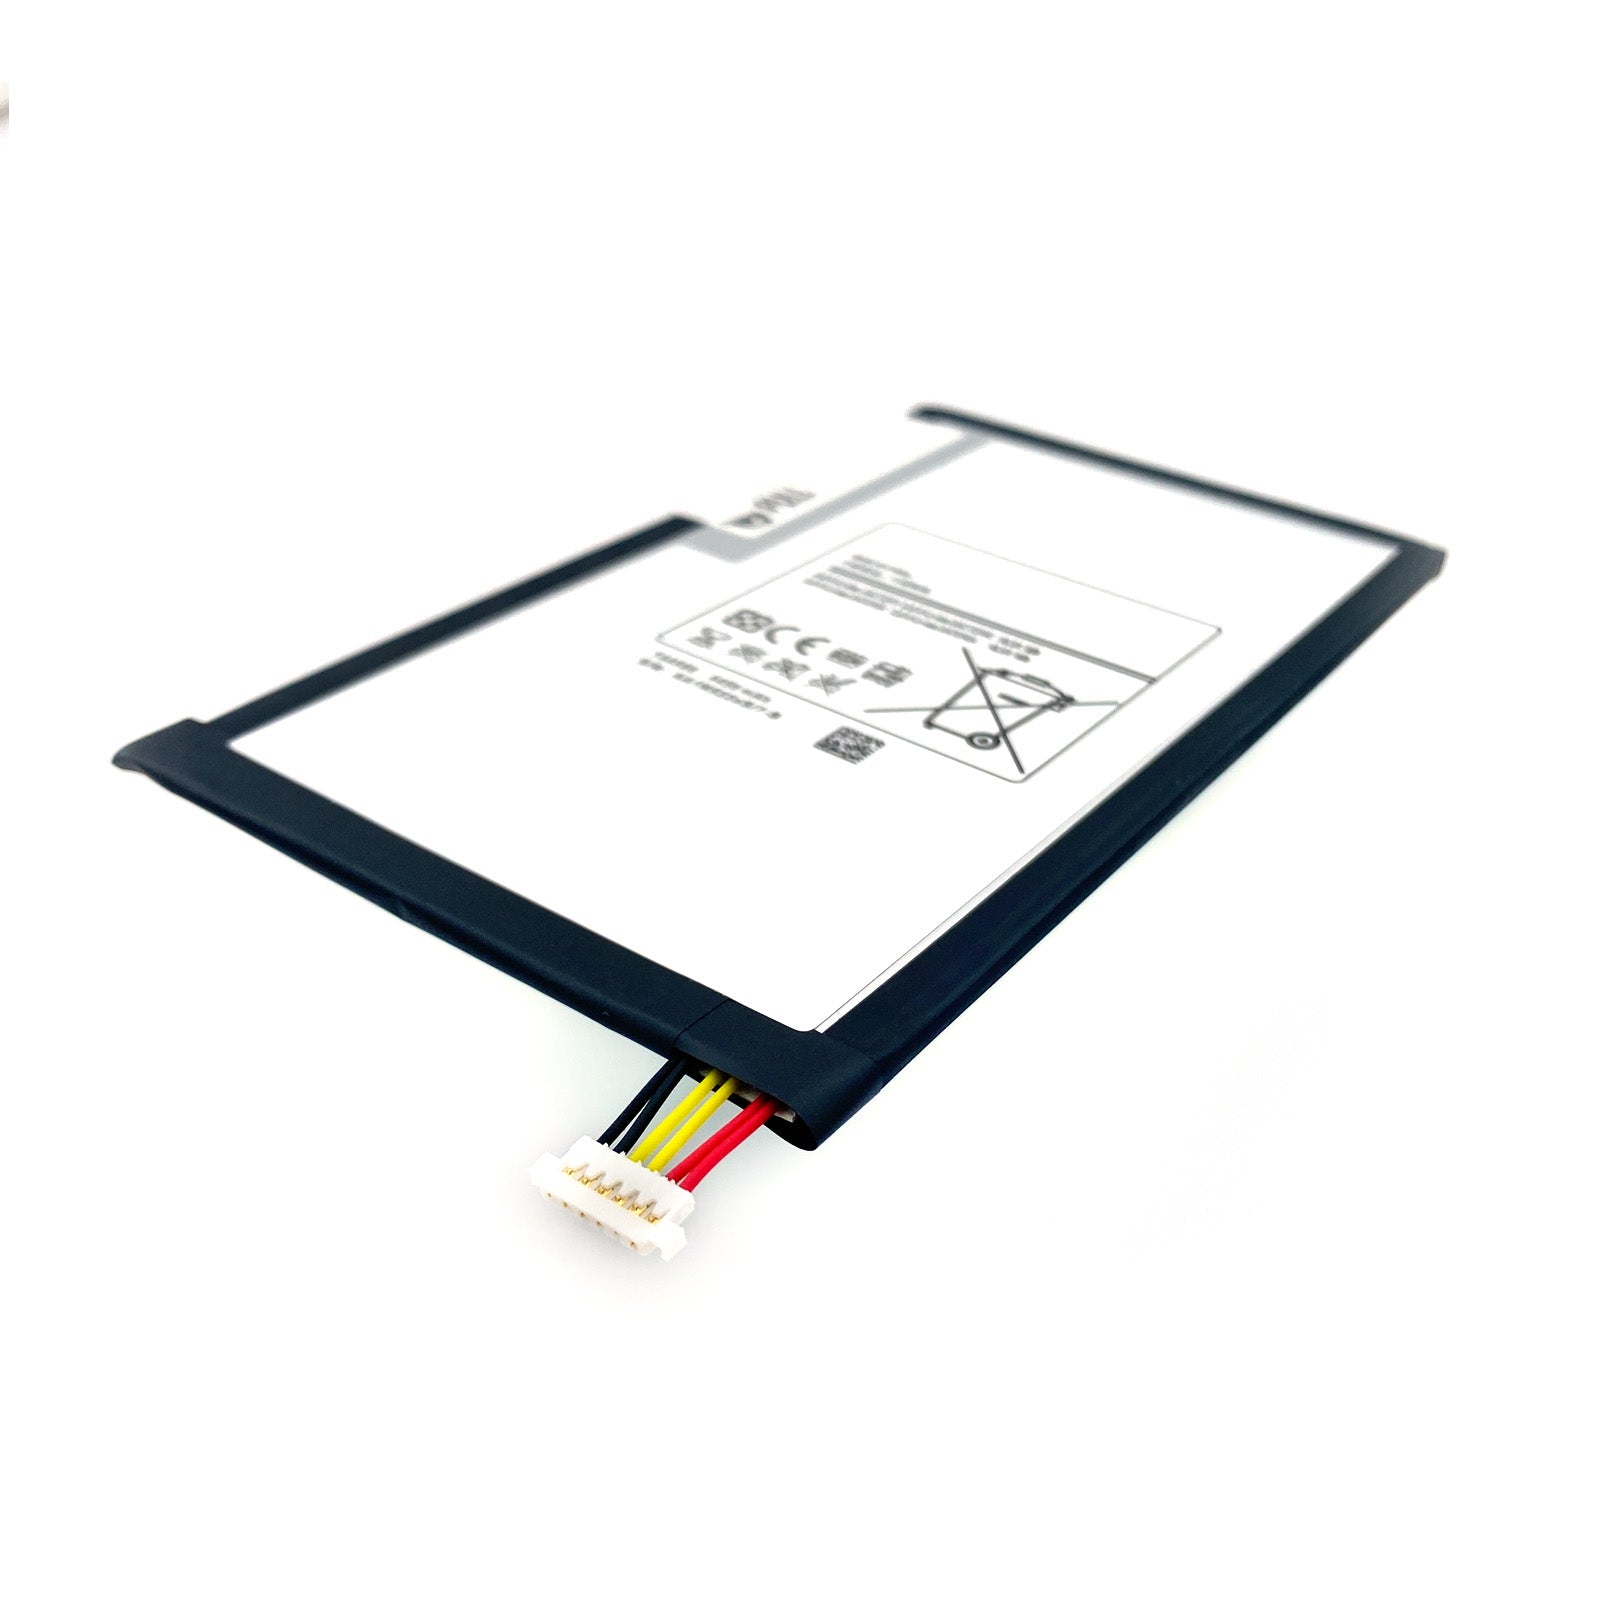 Verbessern Sie die Akkulaufzeit Ihres Samsung Galaxy Tab 3 8.0" mit diesem kompatiblen Ersatzakku. Mit einer Kapazität von 4450mAh ist er eine zuverlässige Lösung für unterwegs.